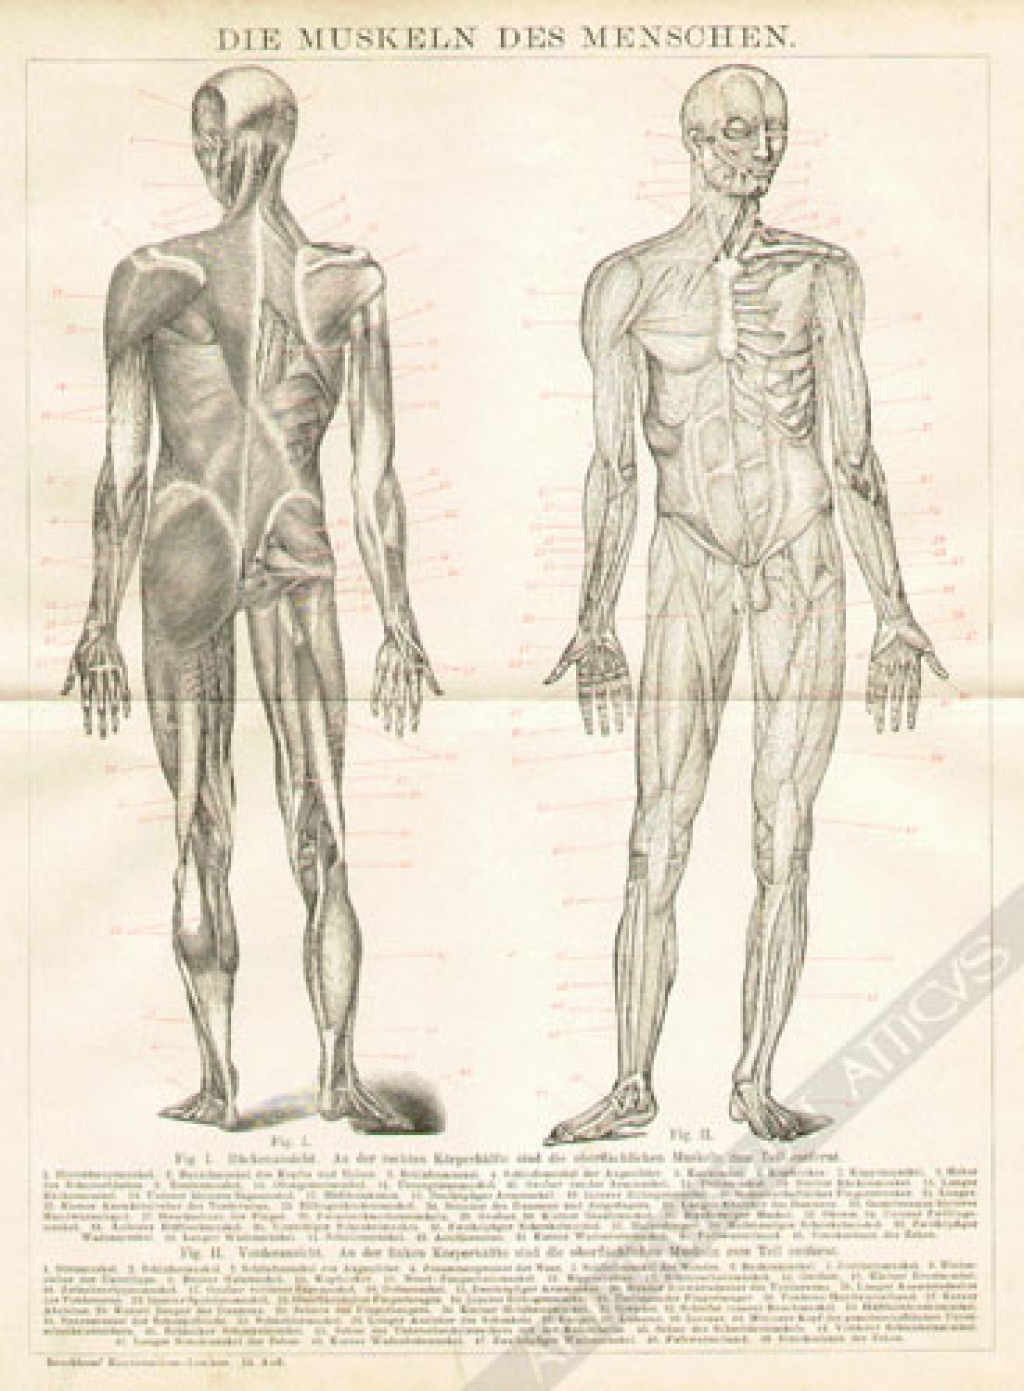 [rycina, 1898] Die Muskeln des Menschen [mięśnie człowieka]